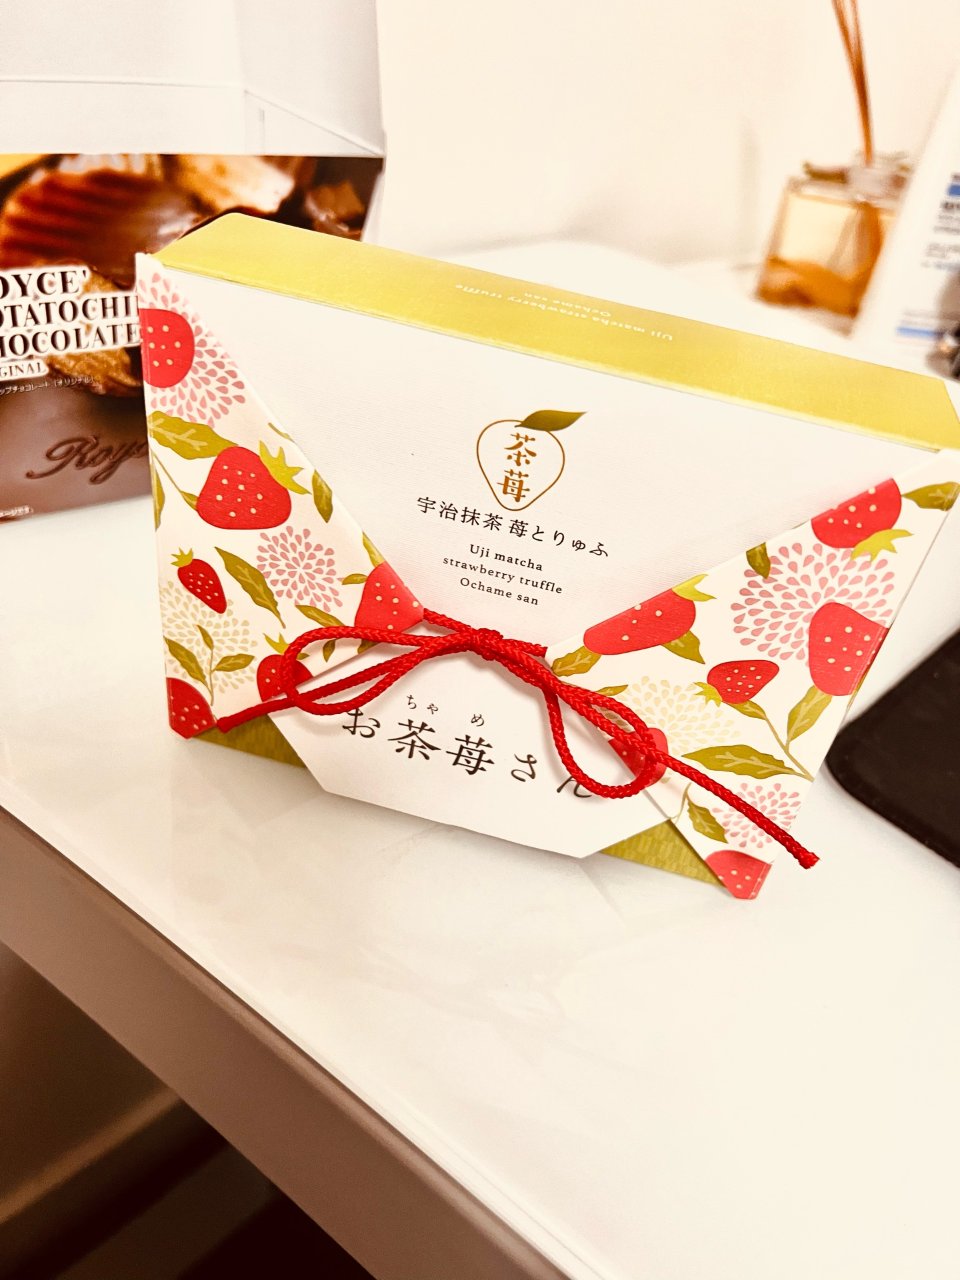 日式抹茶草莓巧克力- 茶莓...